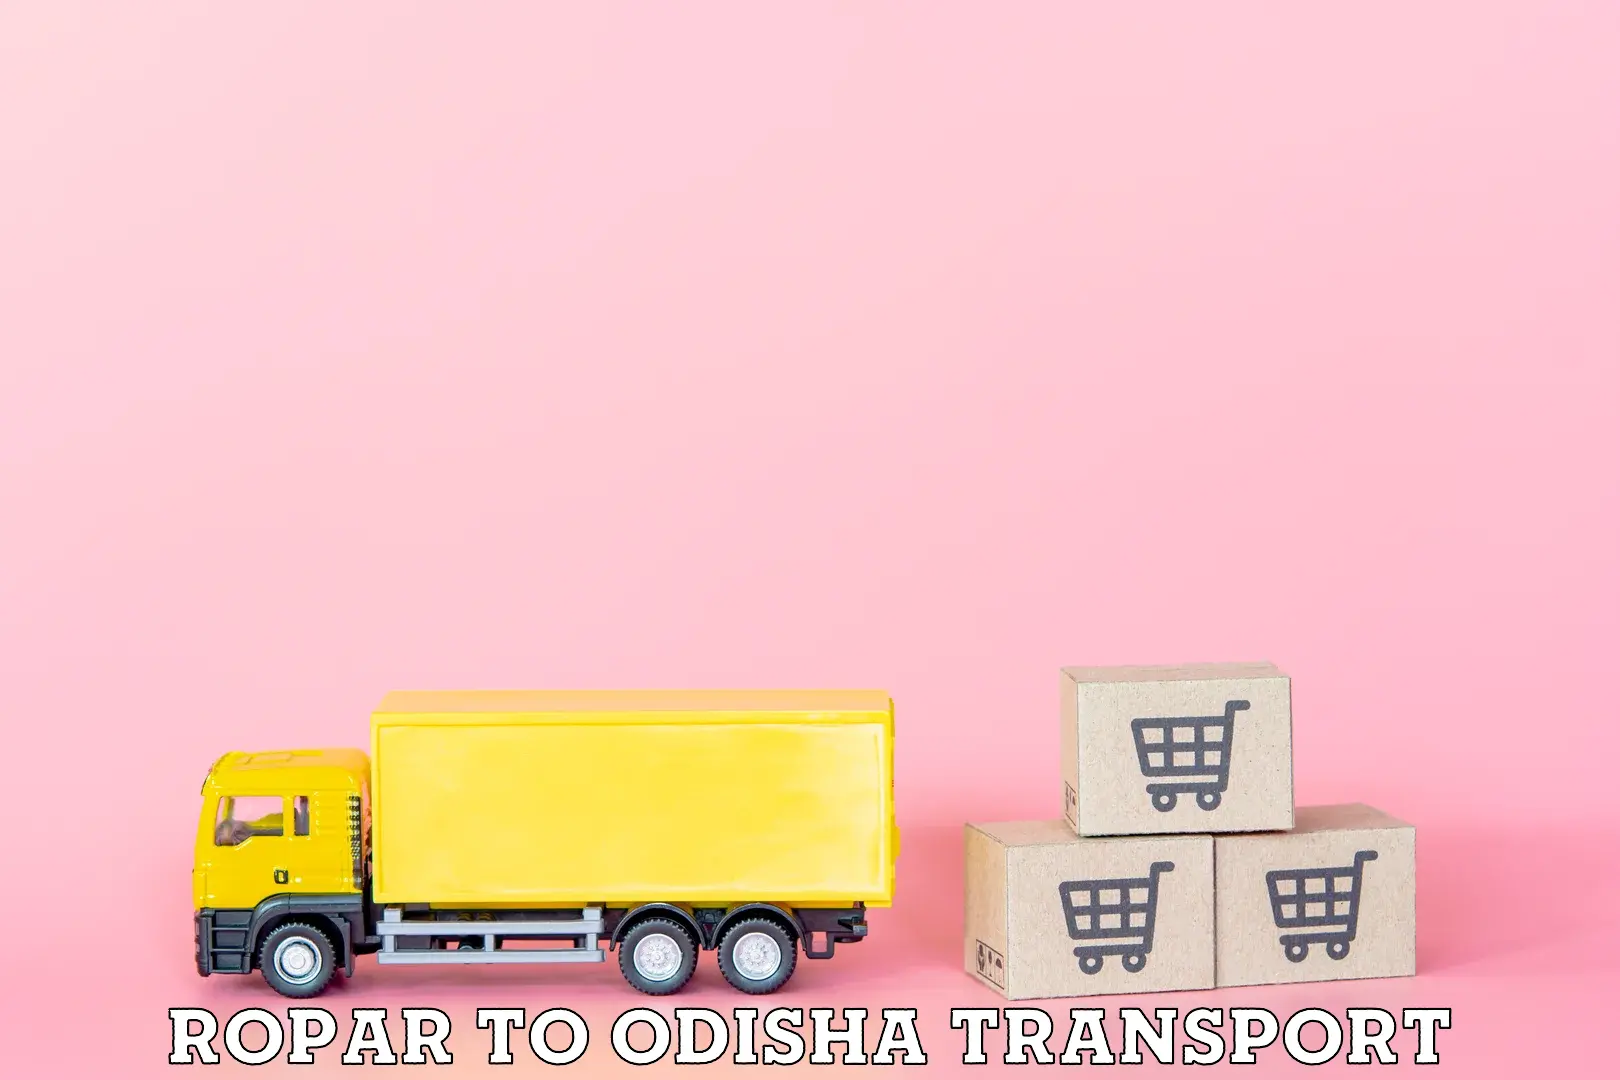 Commercial transport service Ropar to Kosagumuda